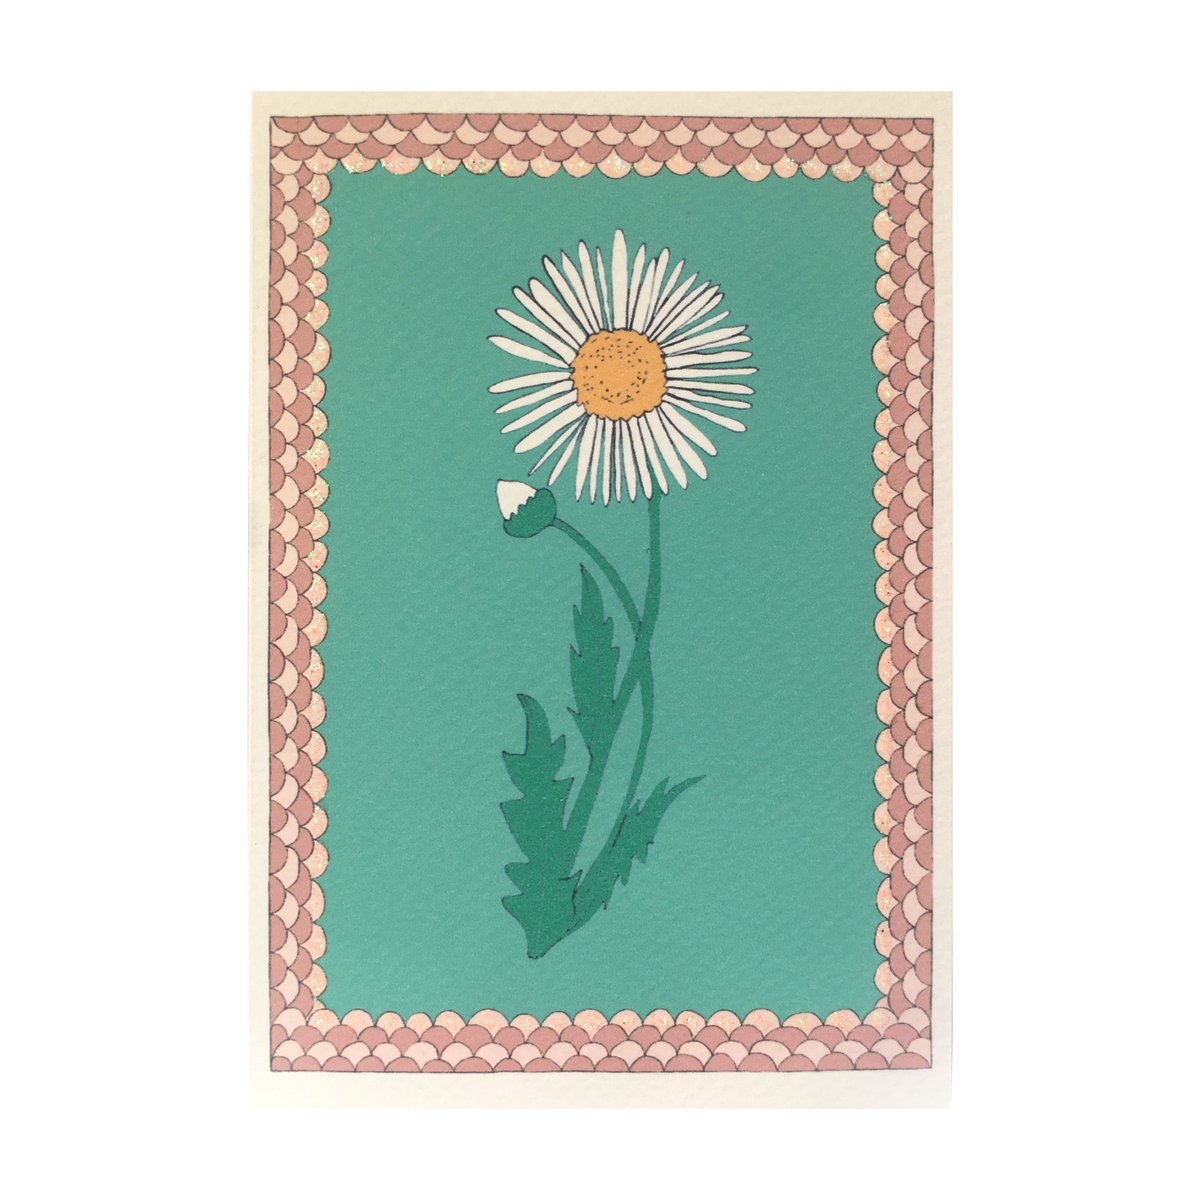 Daisy Flower Frame Card 